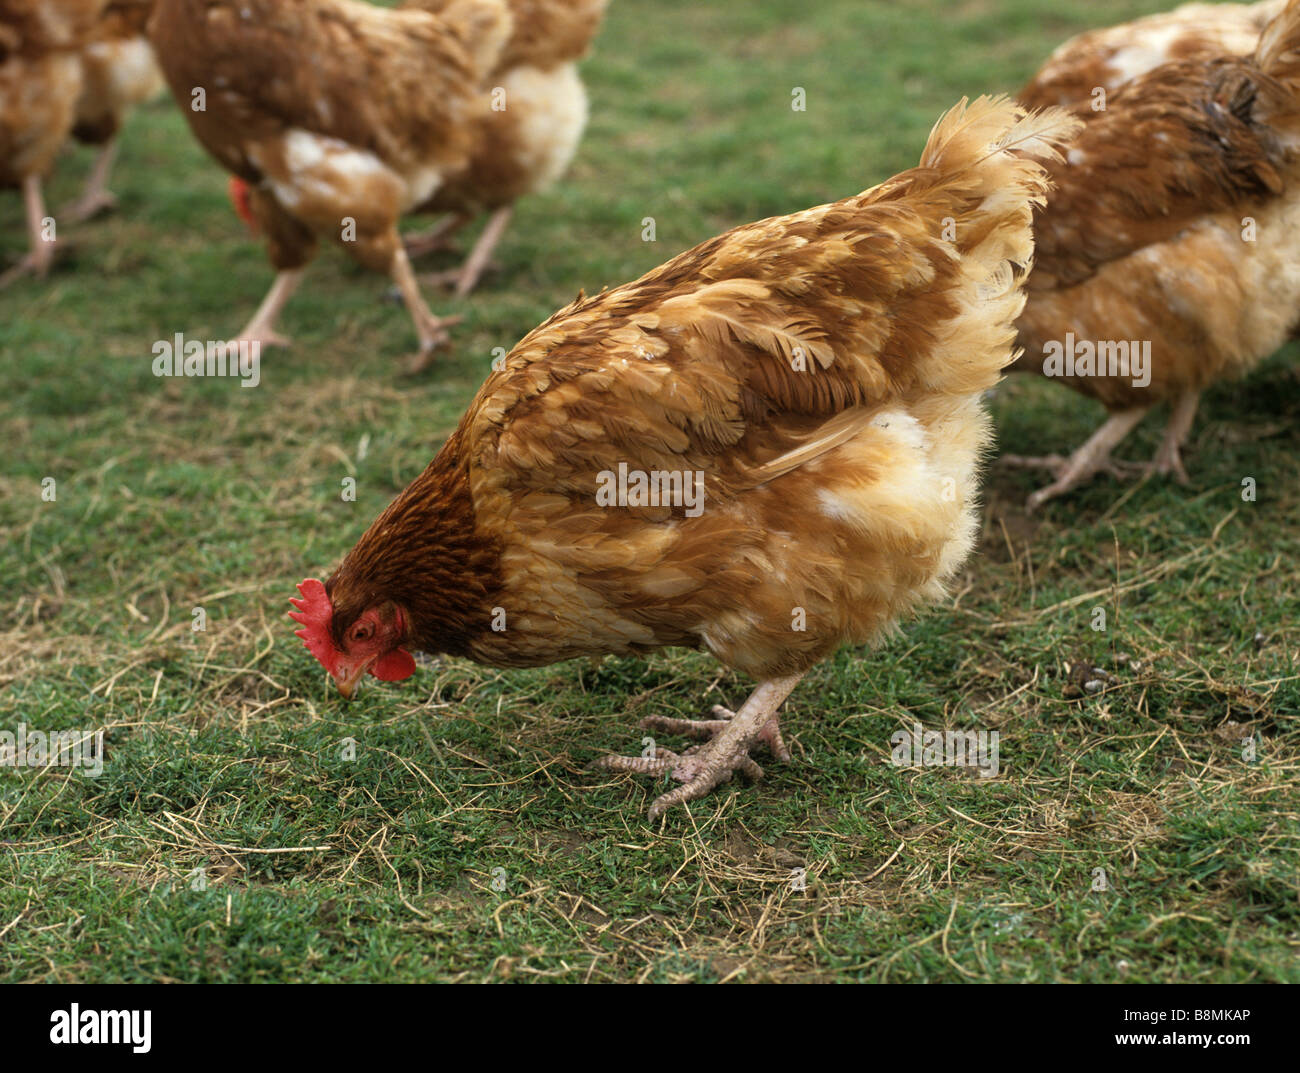 Commerciale gamma libera la posa di pollo su erba in uovo grande unità di produzione Foto Stock